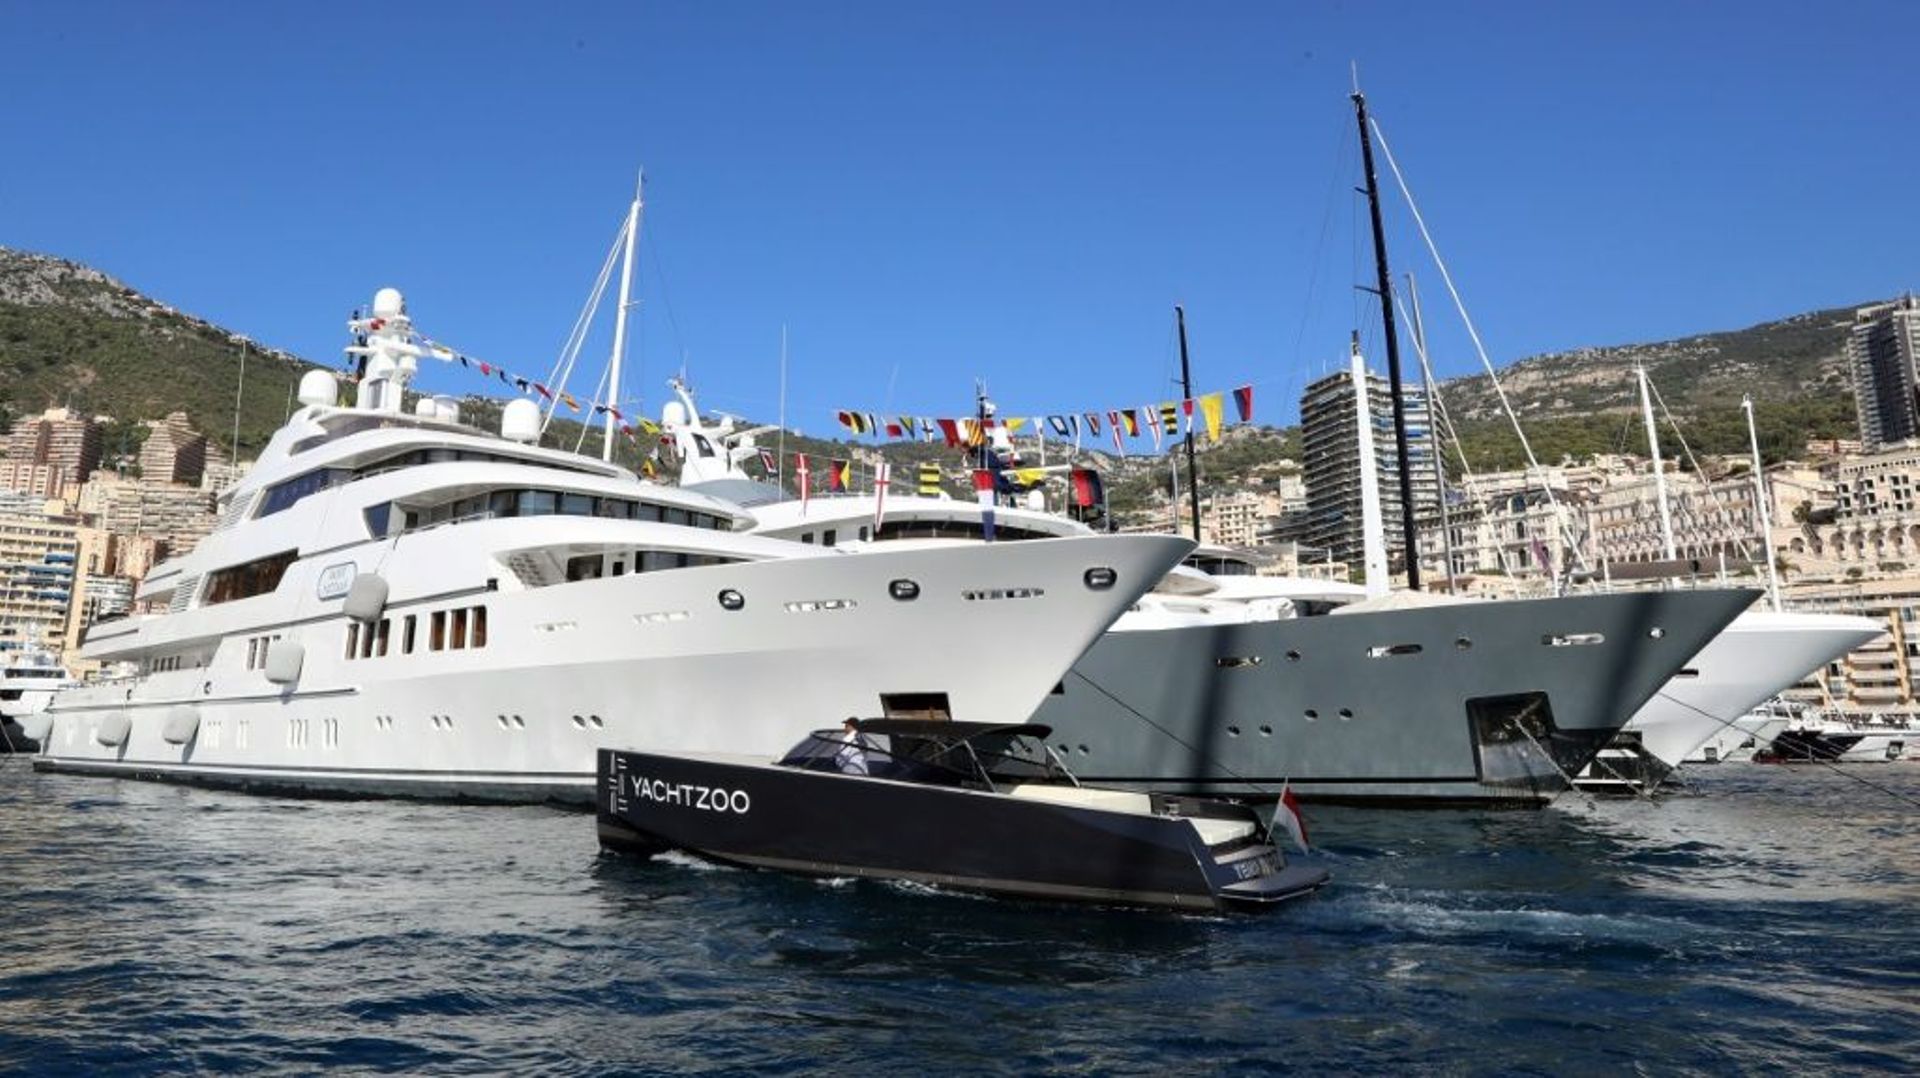 Des yachts dans le port de Monaco en septembre 2018